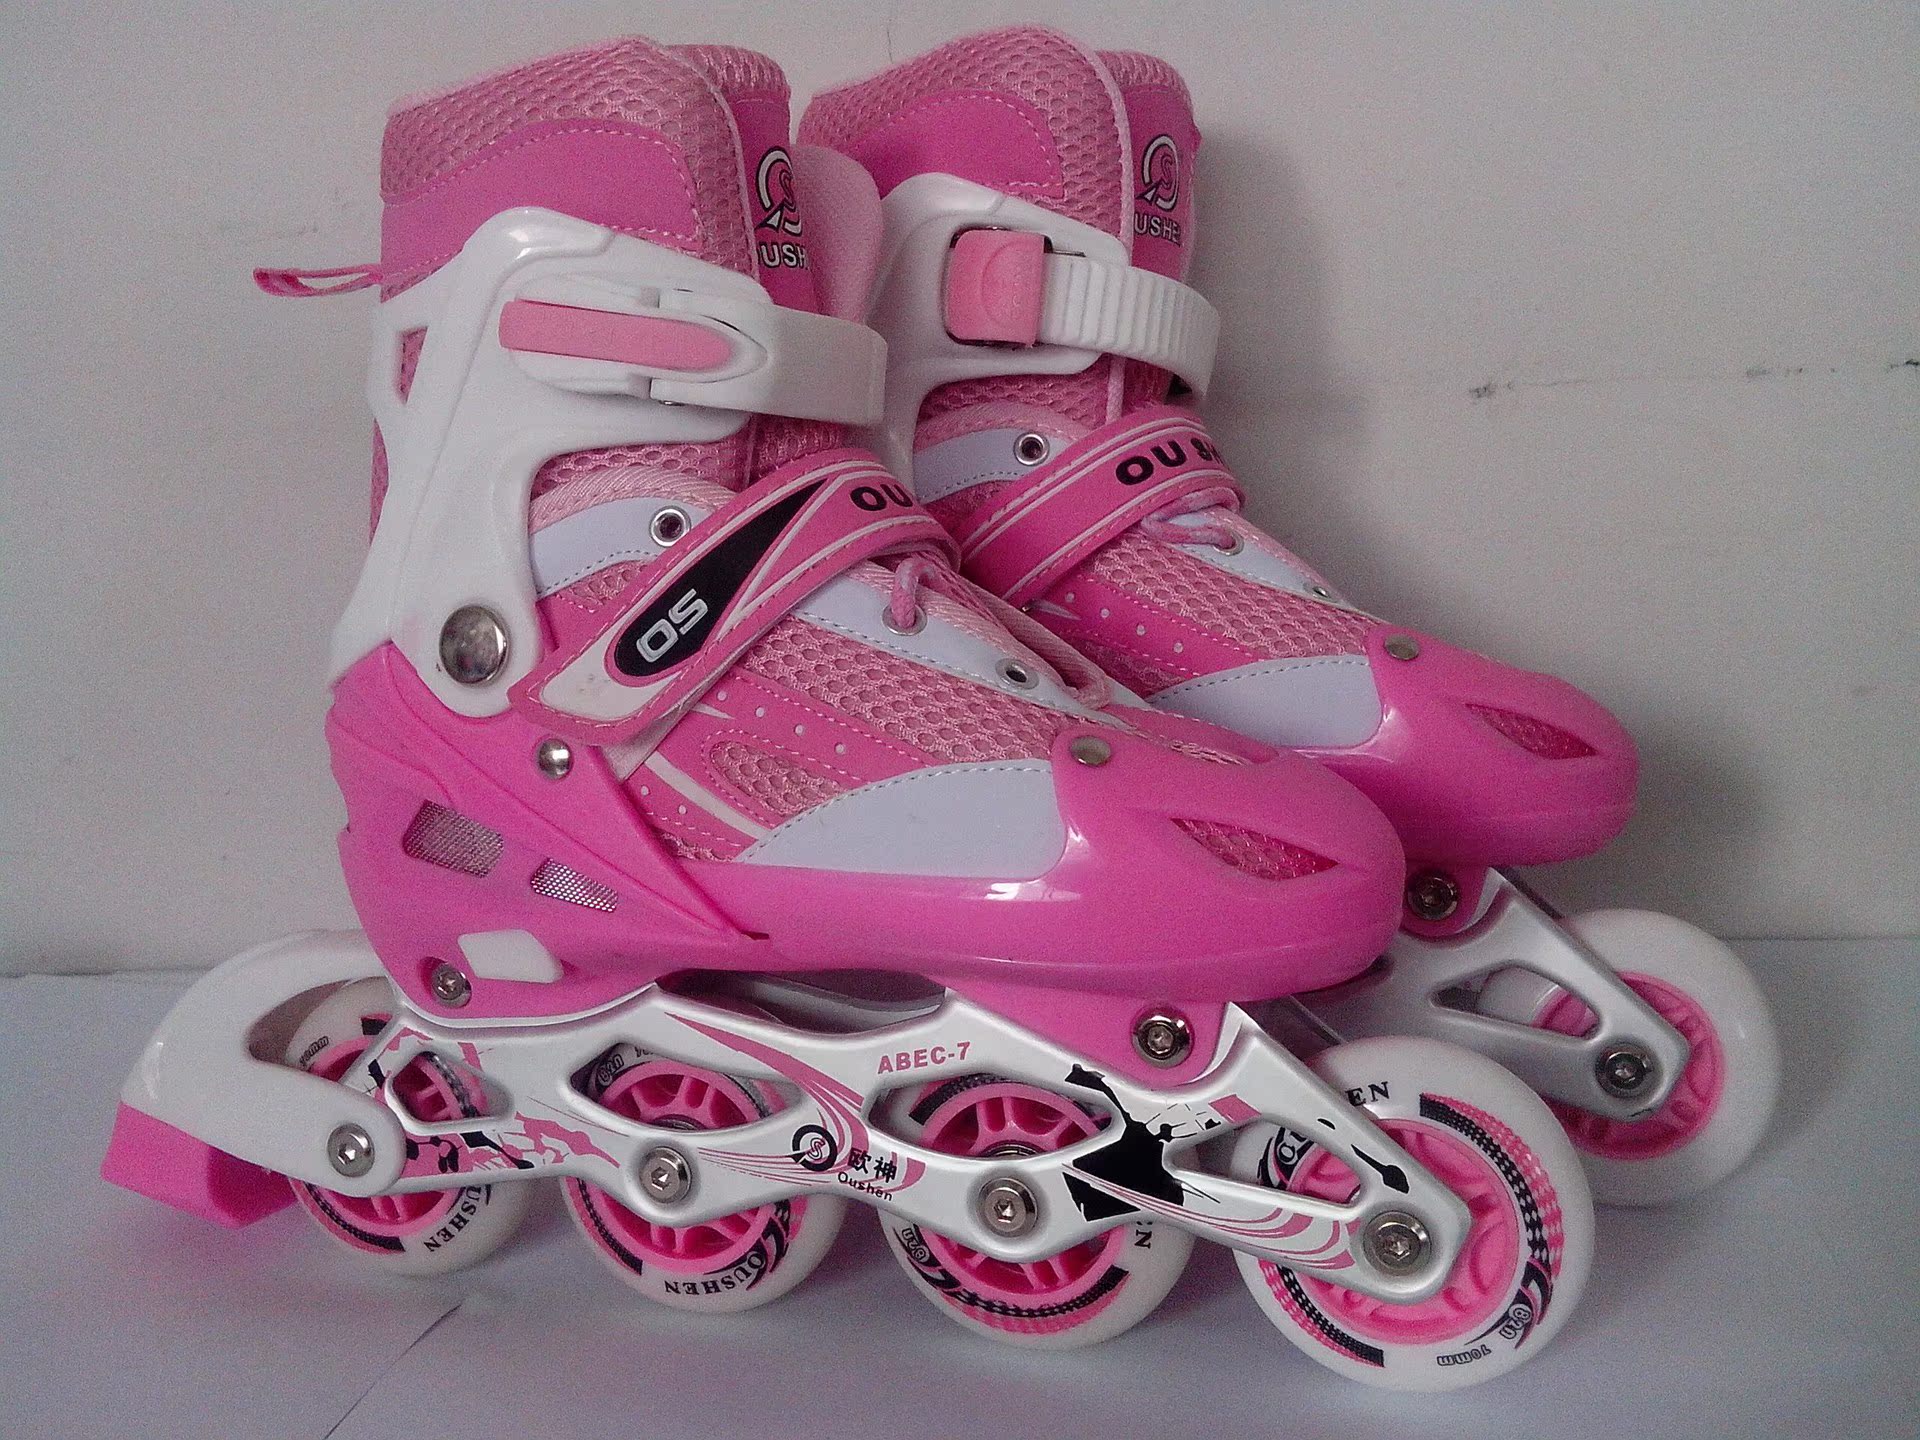 厂家直销 2014最便宜的儿童轮滑溜冰鞋,可调节 价格便宜质量保证